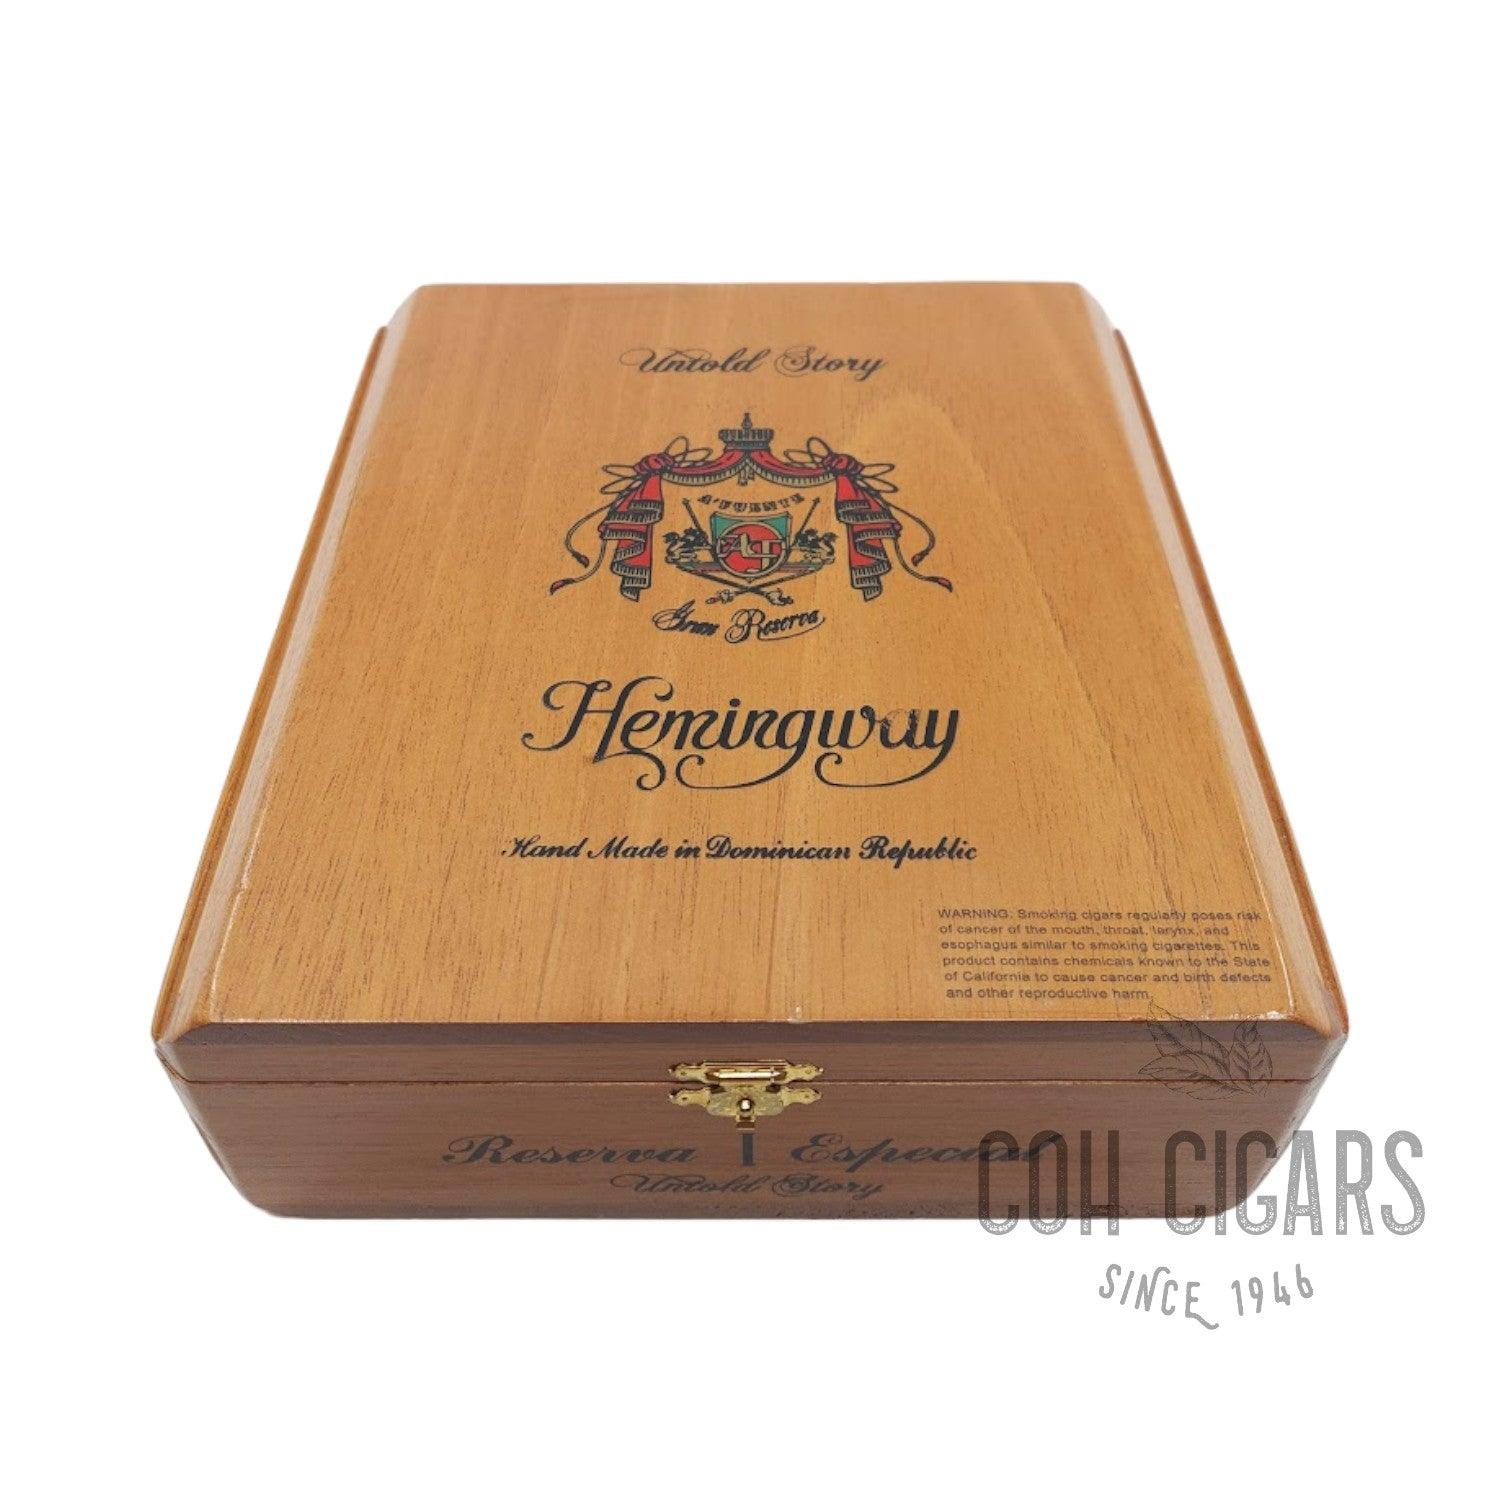 Arturo Fuente Cigar | Hemingway Reserva Especial Untold Story Maduro | Box 25 - hk.cohcigars